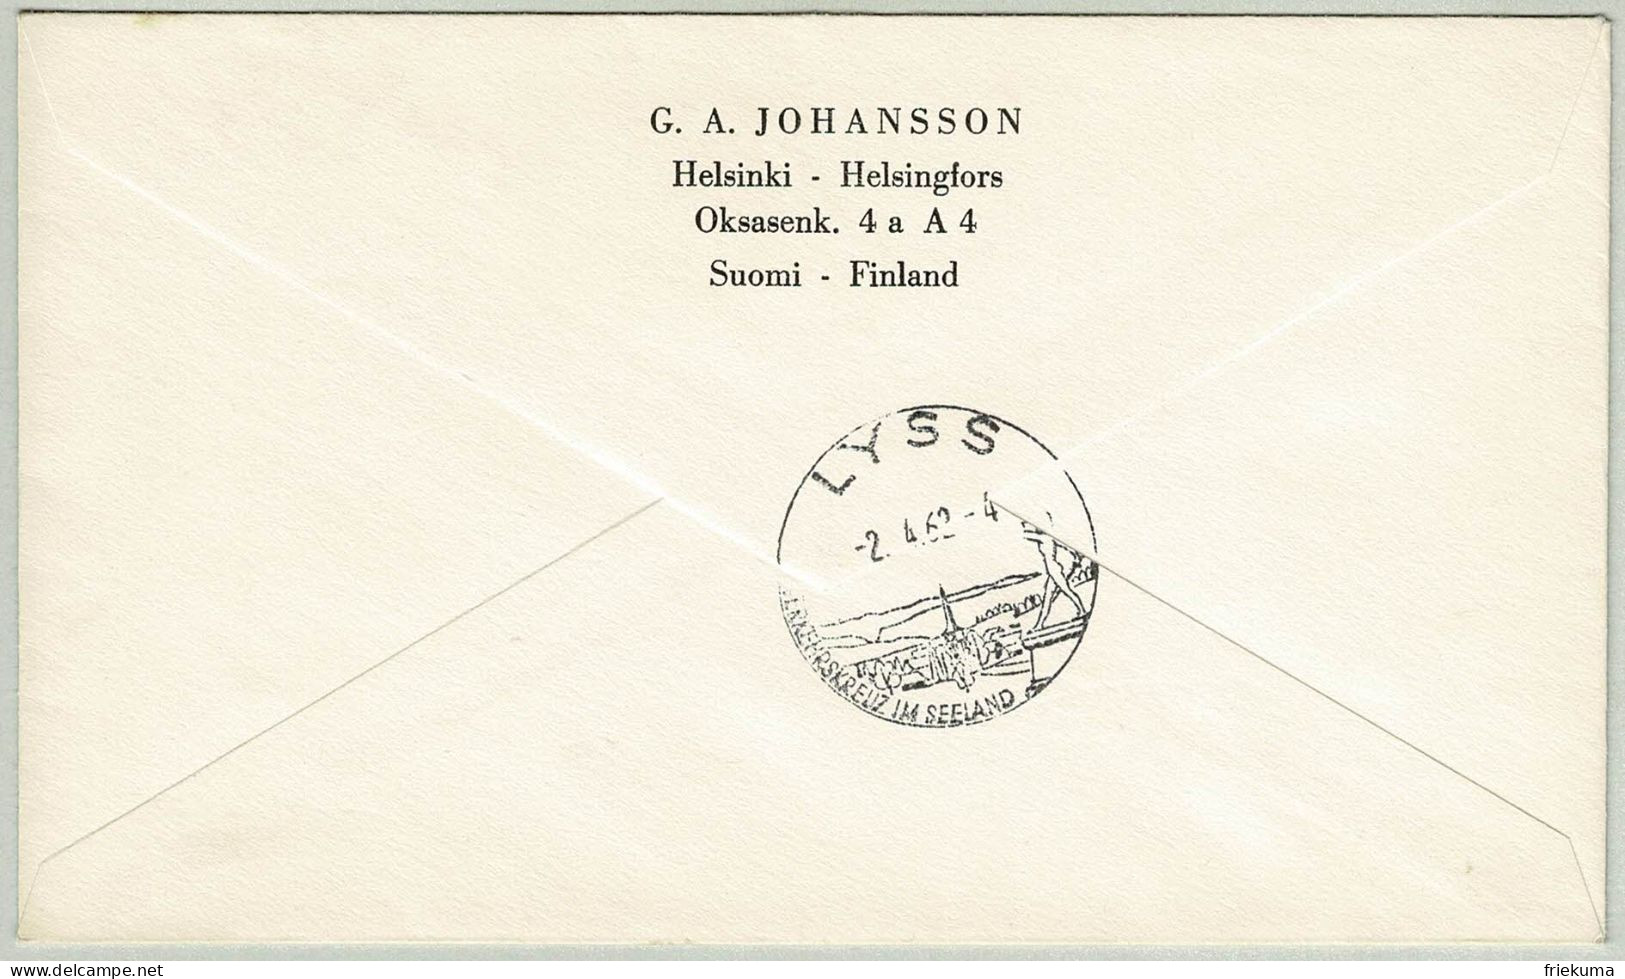 Finnland / Finland 1962, Brief Einschreiben Helsinki - Lyss (Schweiz) - Brieven En Documenten